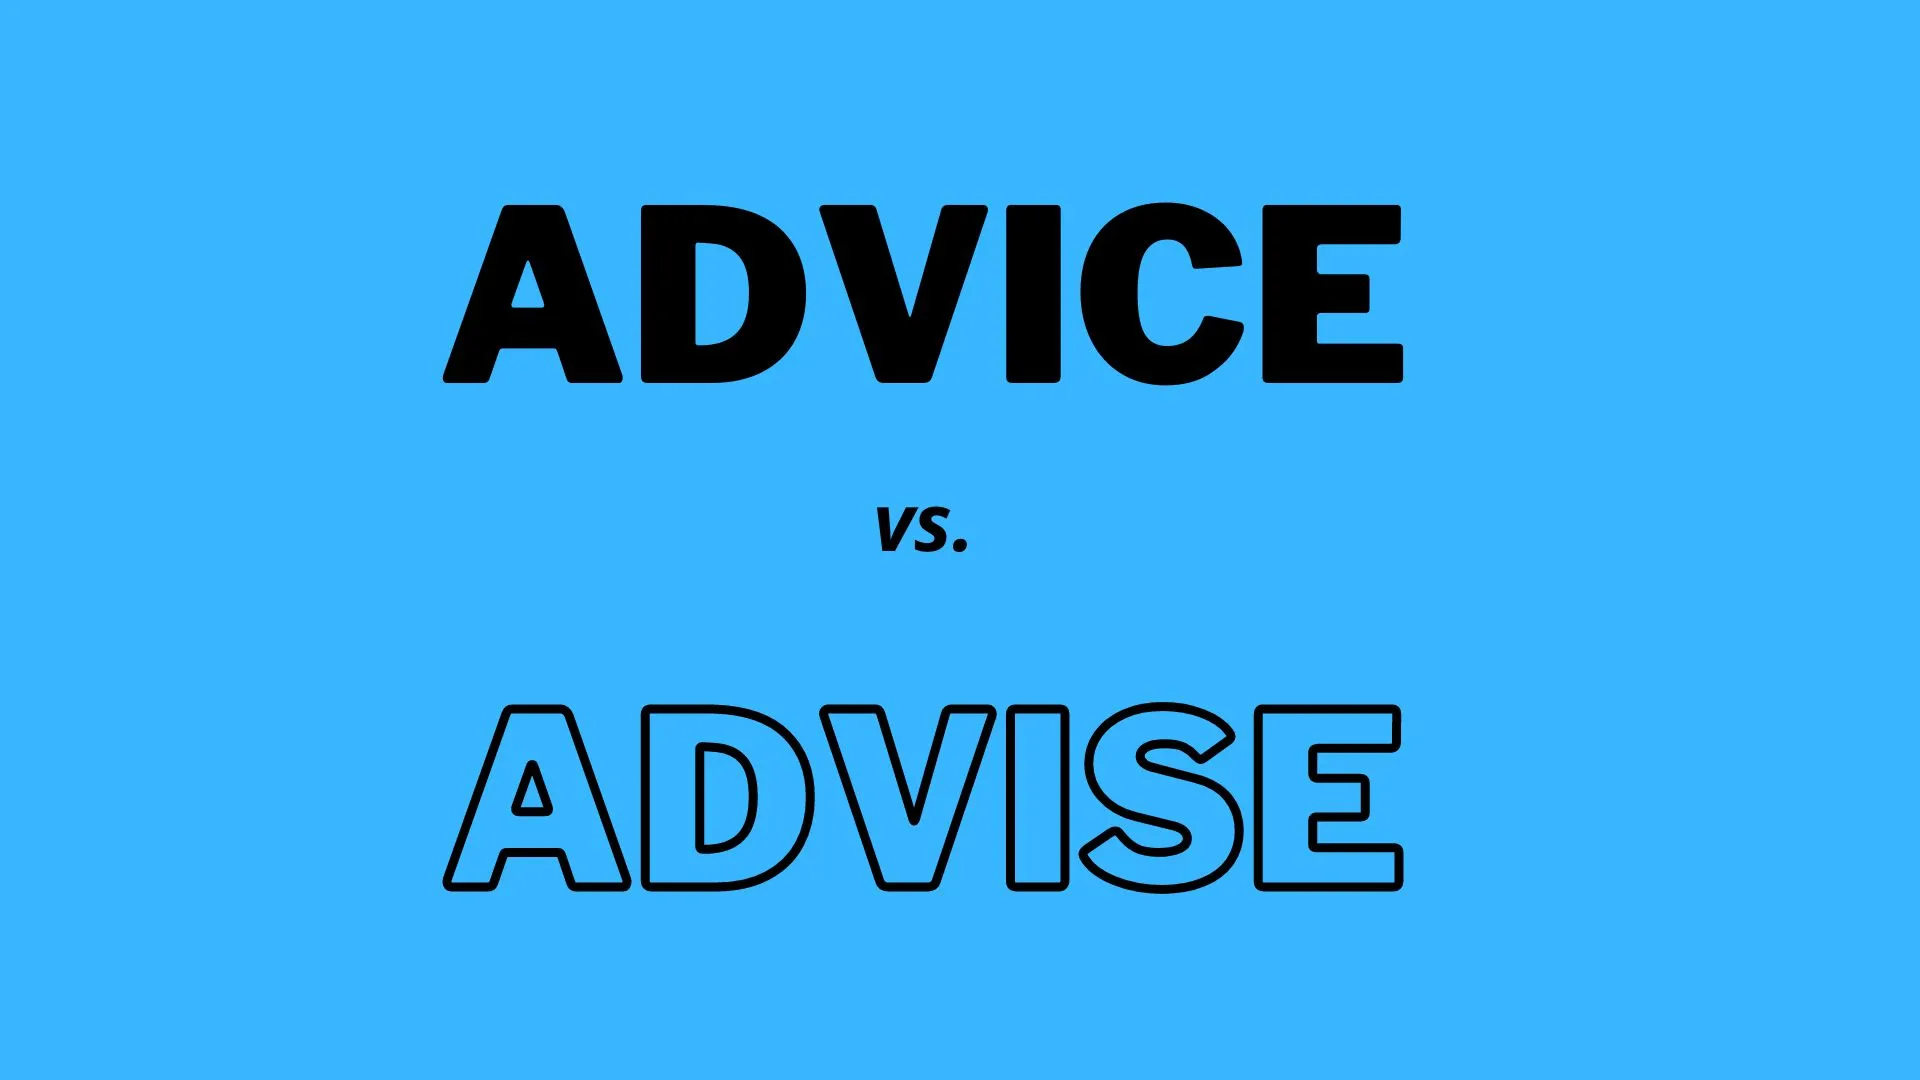 "Advice" es un sustantivo que significa orientación o recomendaciones, mientras que "advise" es un verbo que significa dar consejo.